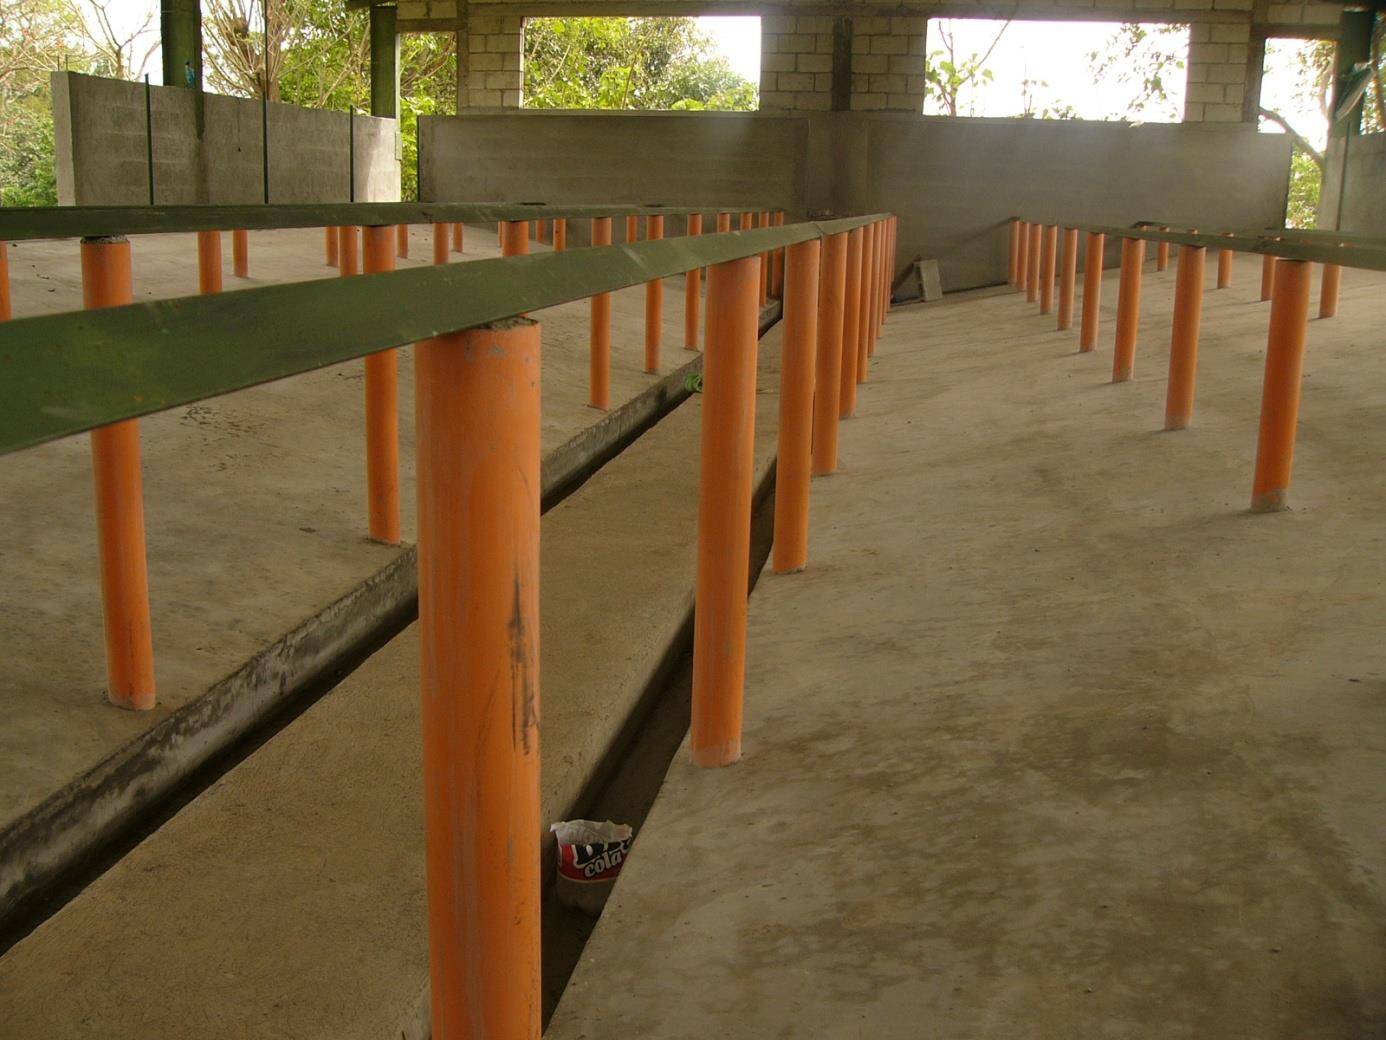 Las bases o pilares constan de un tubo plástico de 3 pulgadas de diámetro con una varilla de hierro para construcción de ½ pulgada en